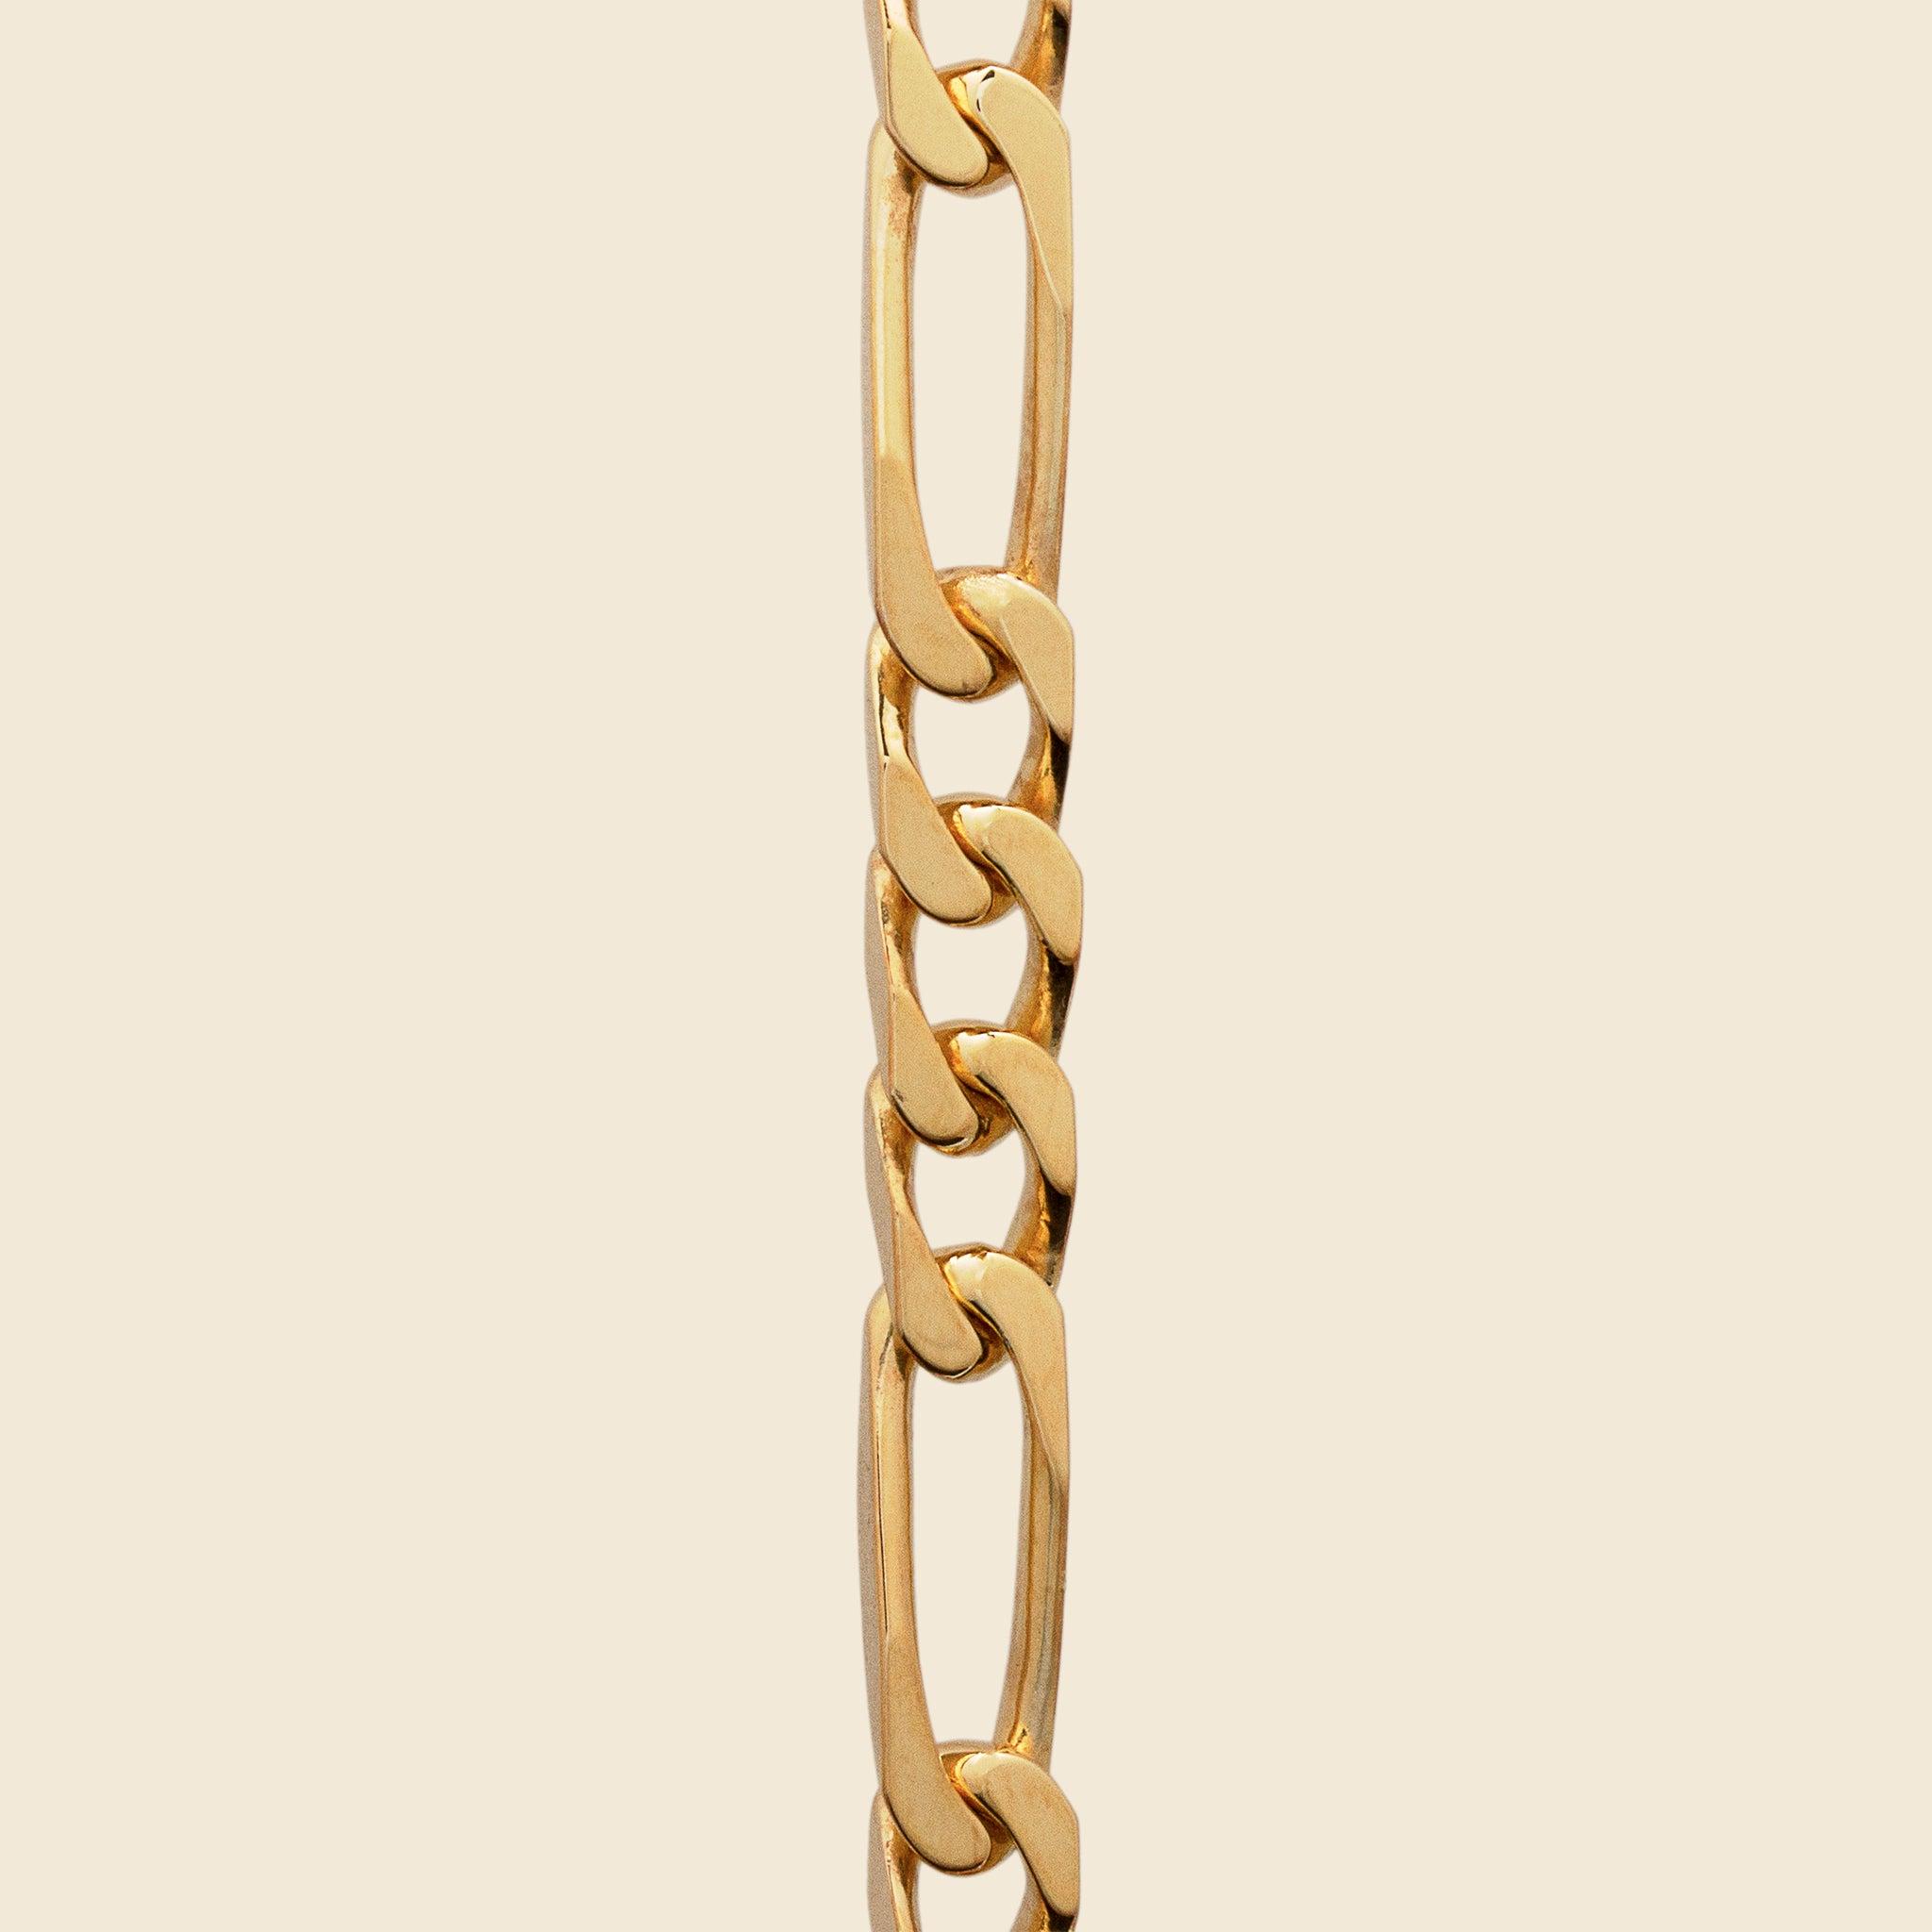 Miansai Men's 6.5mm Cuban Chain Necklace